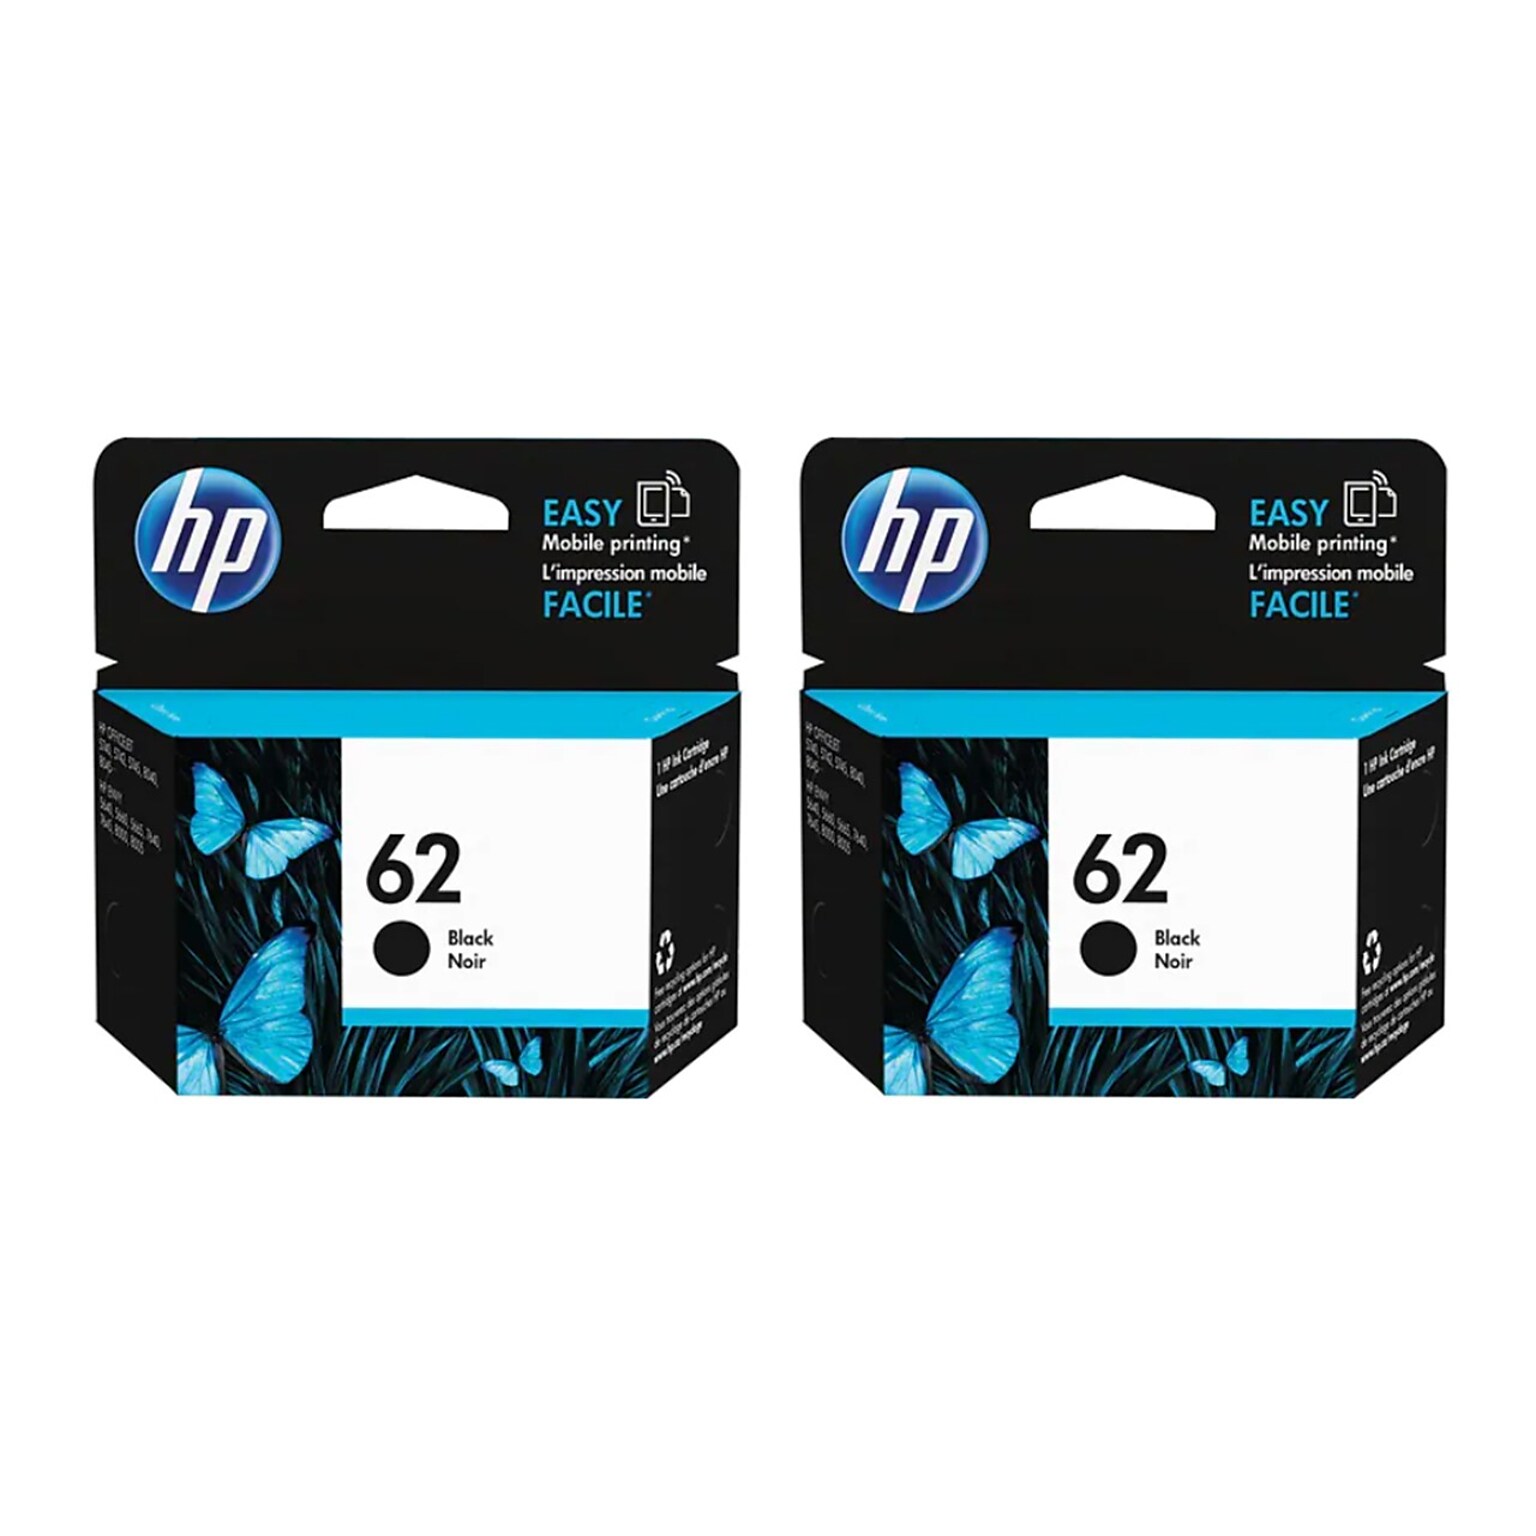 HP 62 Black Ink Cartridge, Standard Yield, 2-Pack